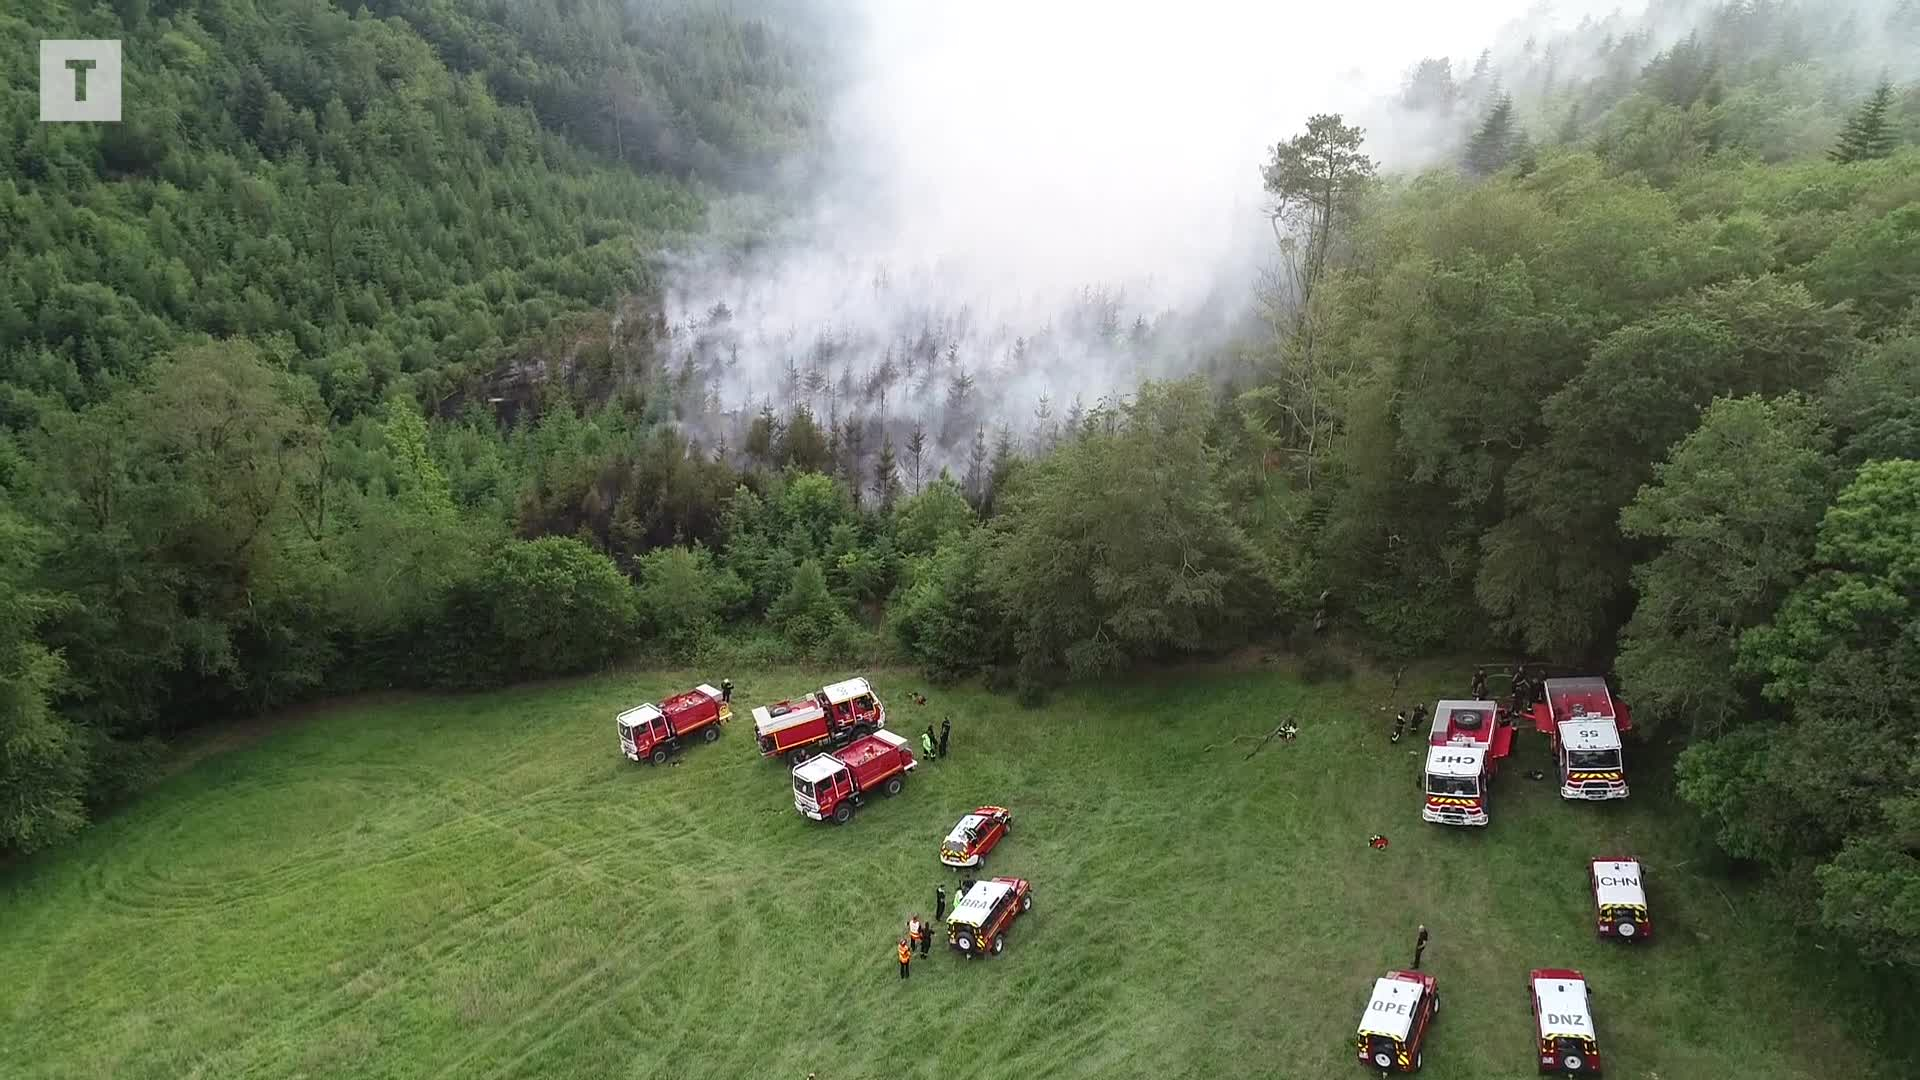 200 pompiers et un hélico bombardier d'eau : incendie maîtrisé sur 5 à 6 ha à Saint-Goazec [Vidéo]